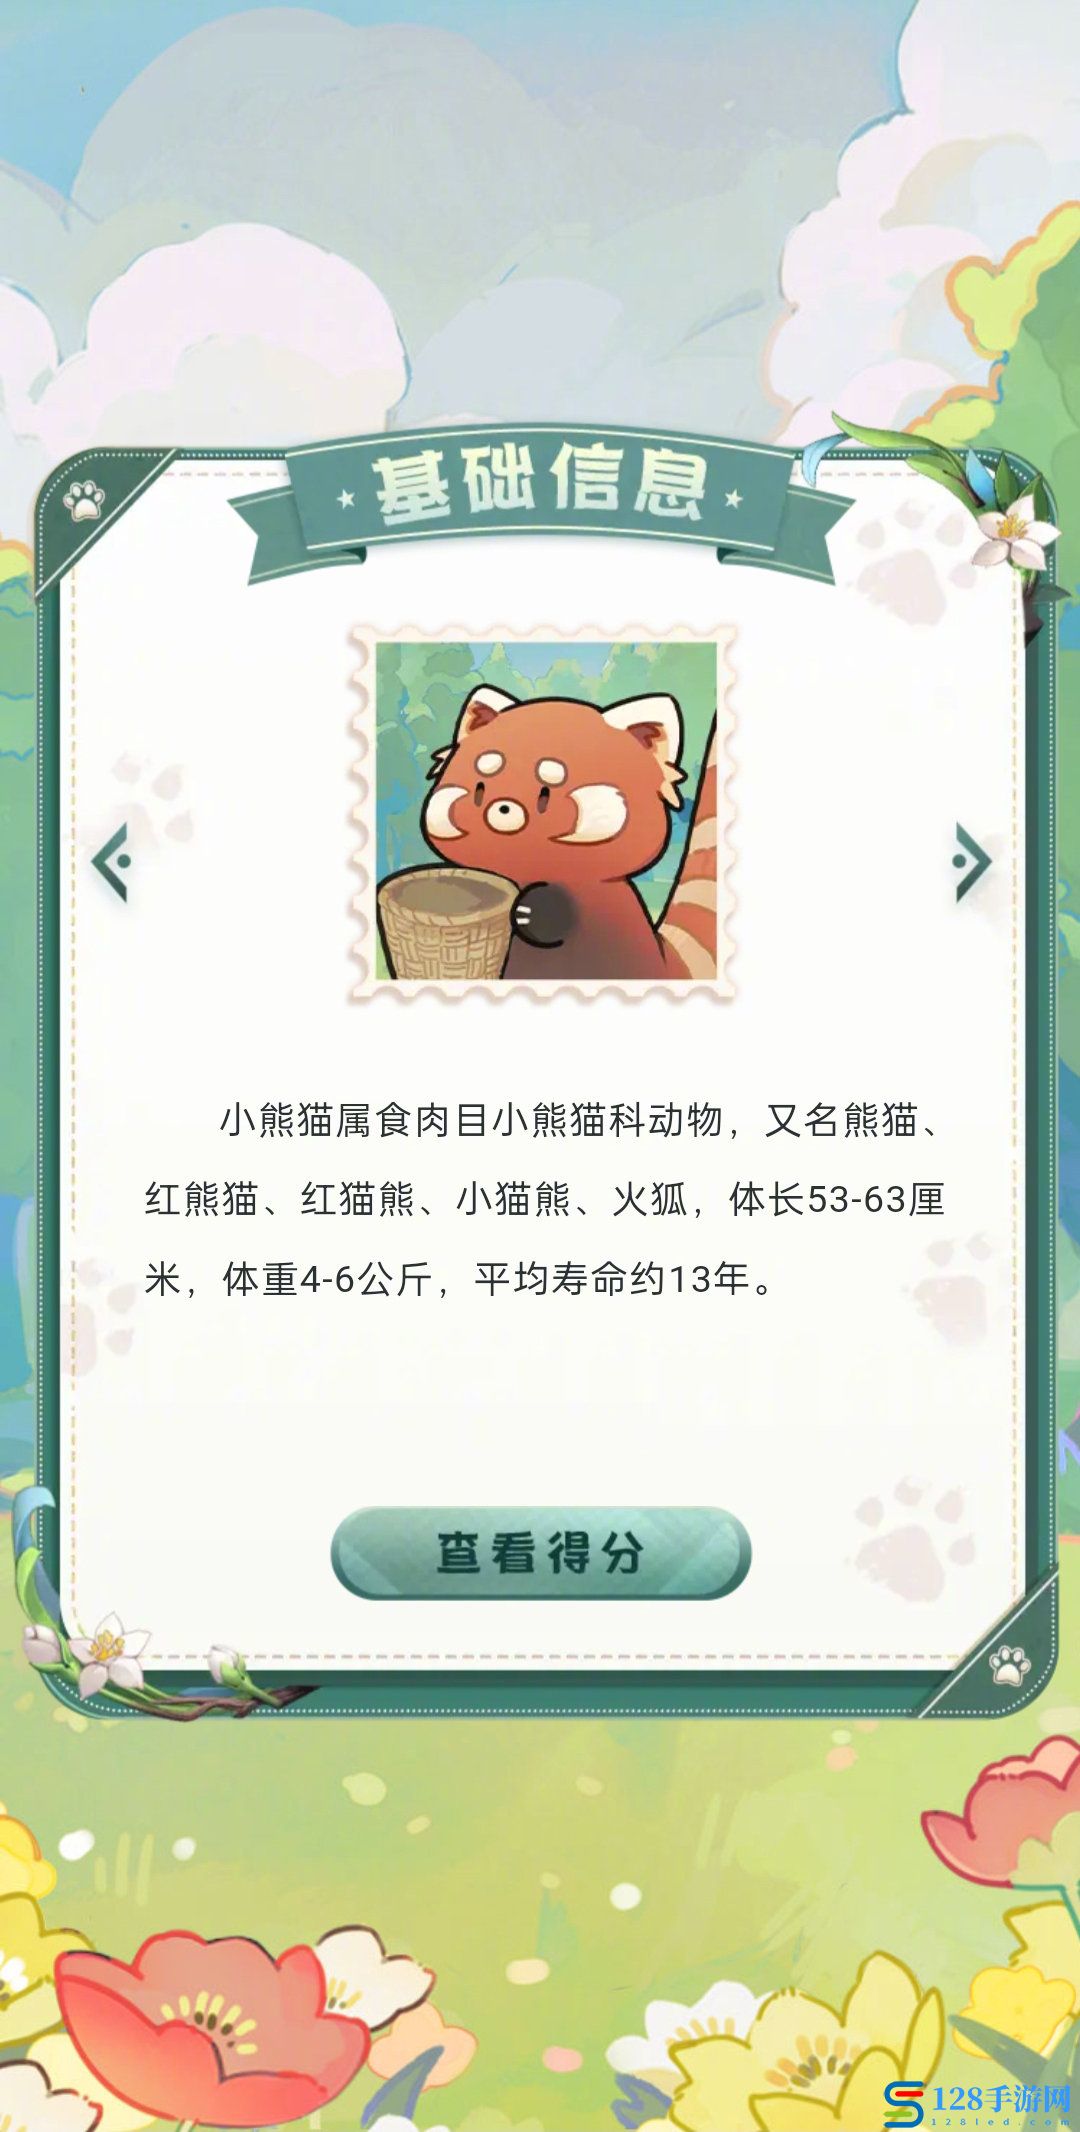 阴阳师小熊猫大挑战在哪 小熊猫大挑战活动地址及玩法一览